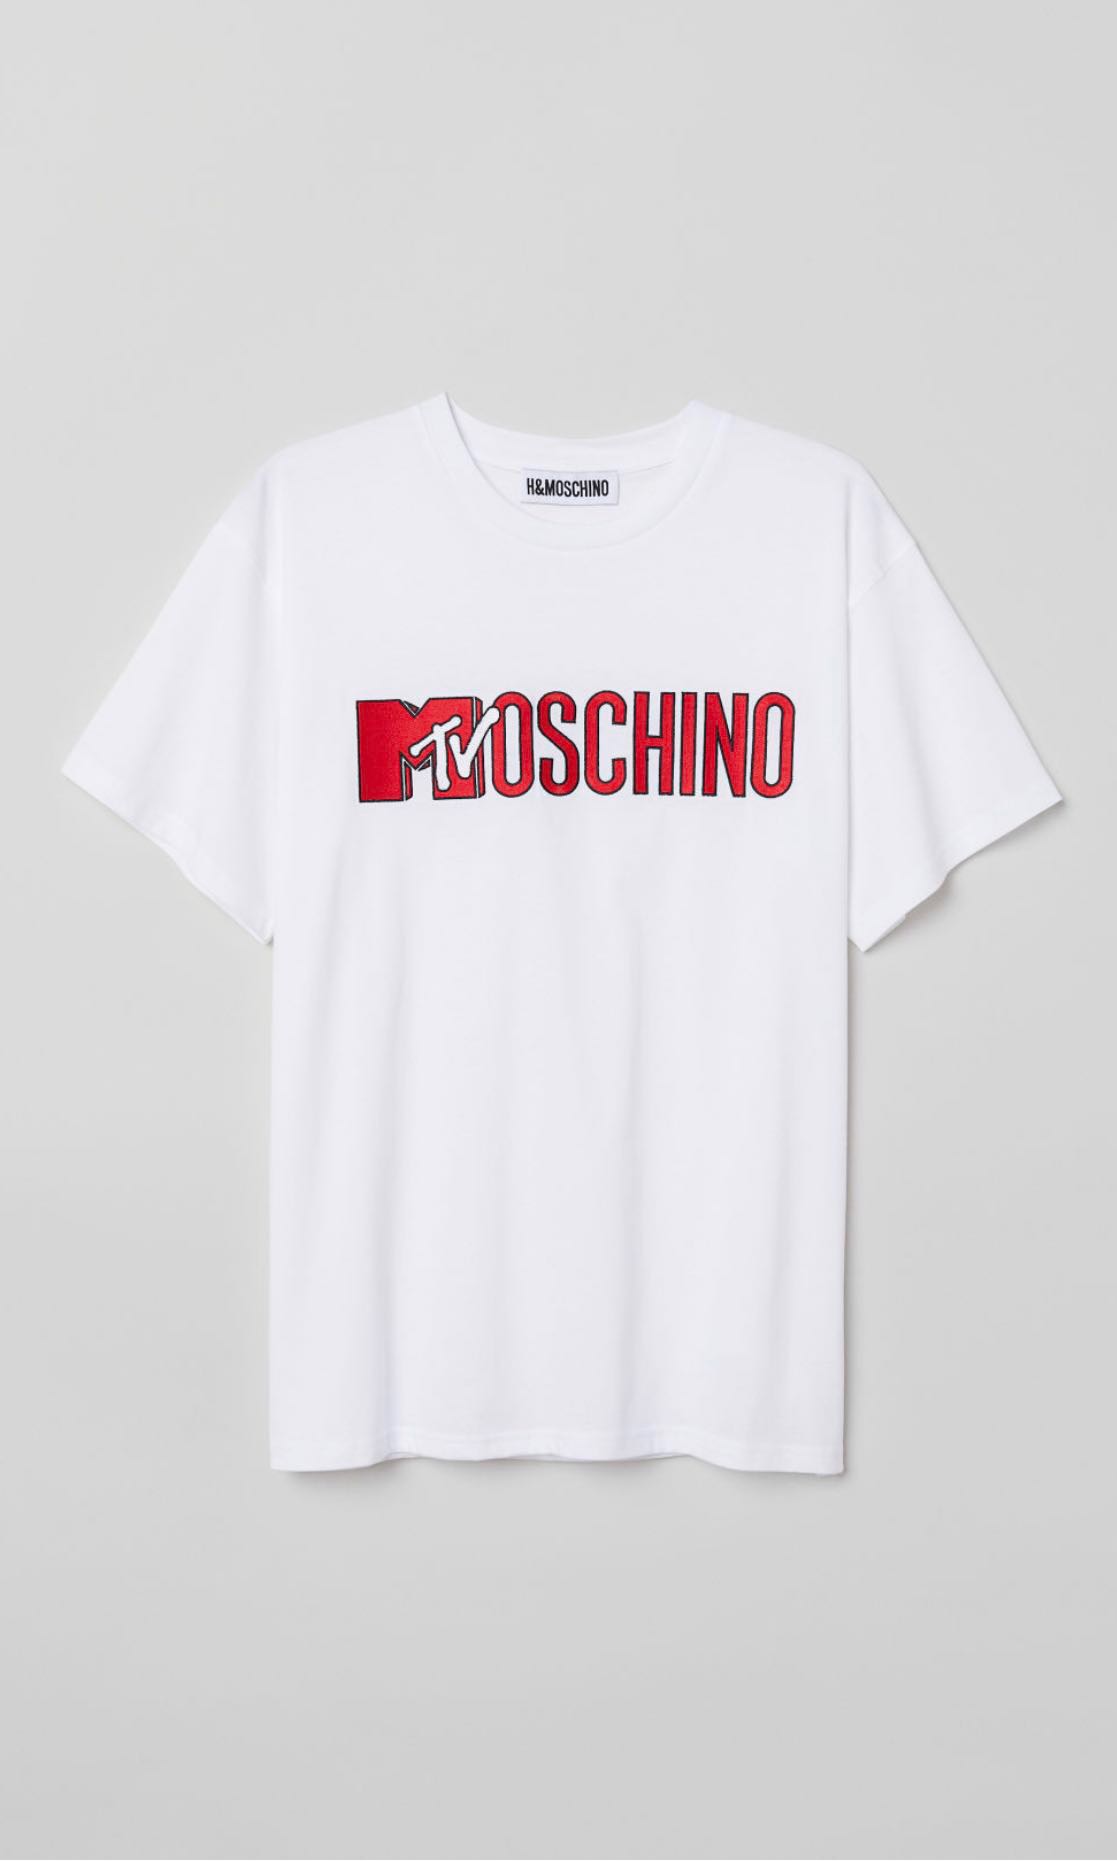 moschino h&m tshirt